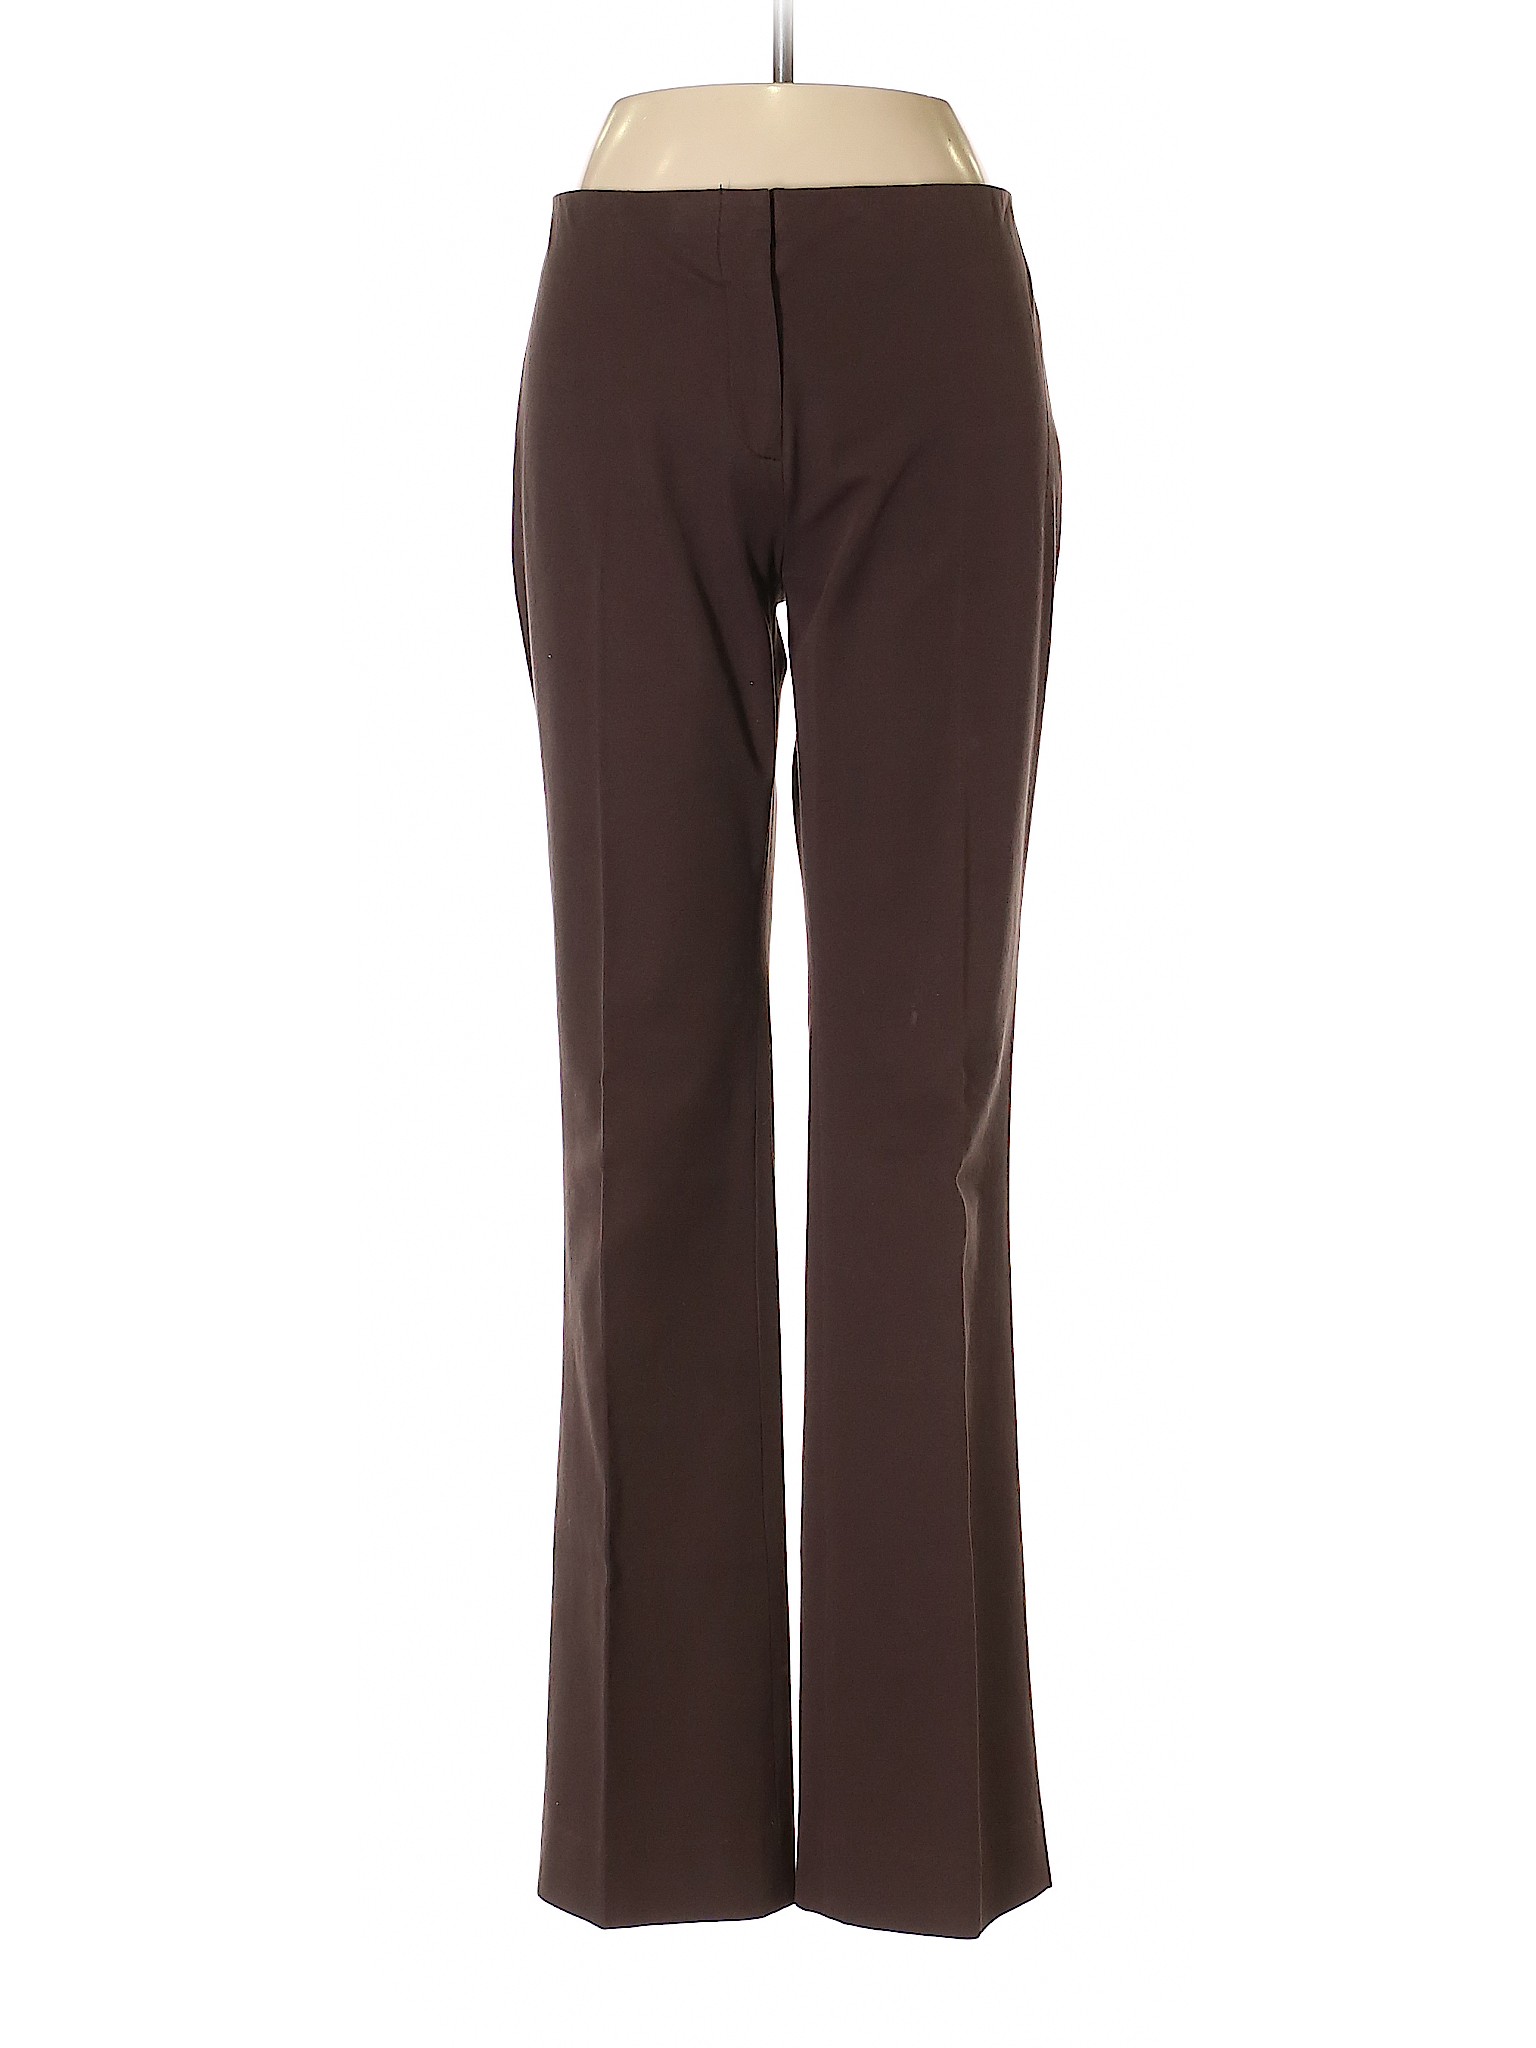 Donna Degnan Women Brown Dress Pants 4 | eBay